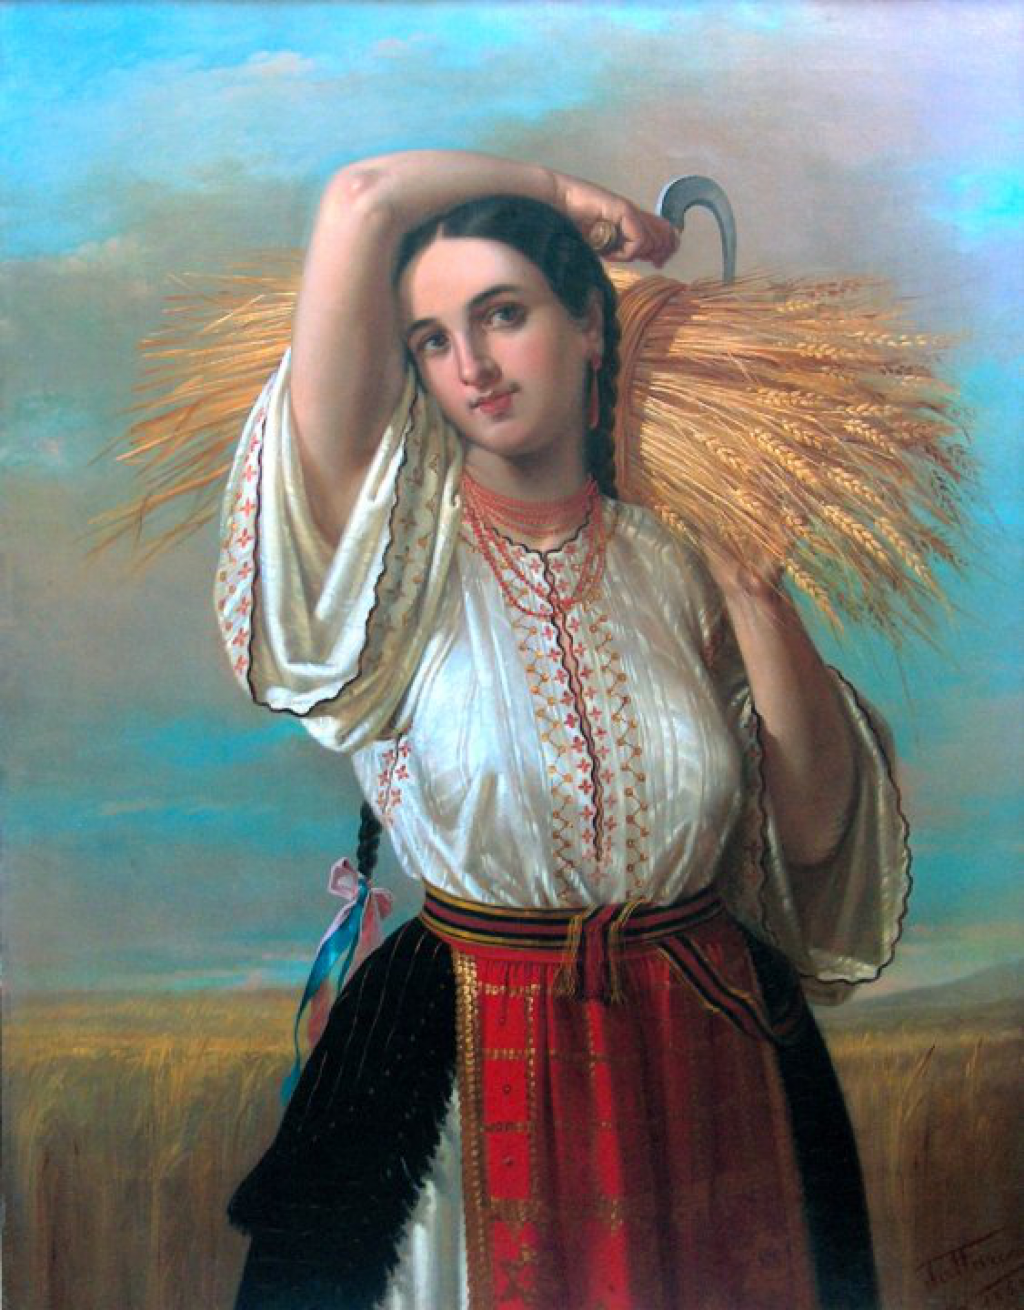 La blouse roumaine dans la peinture